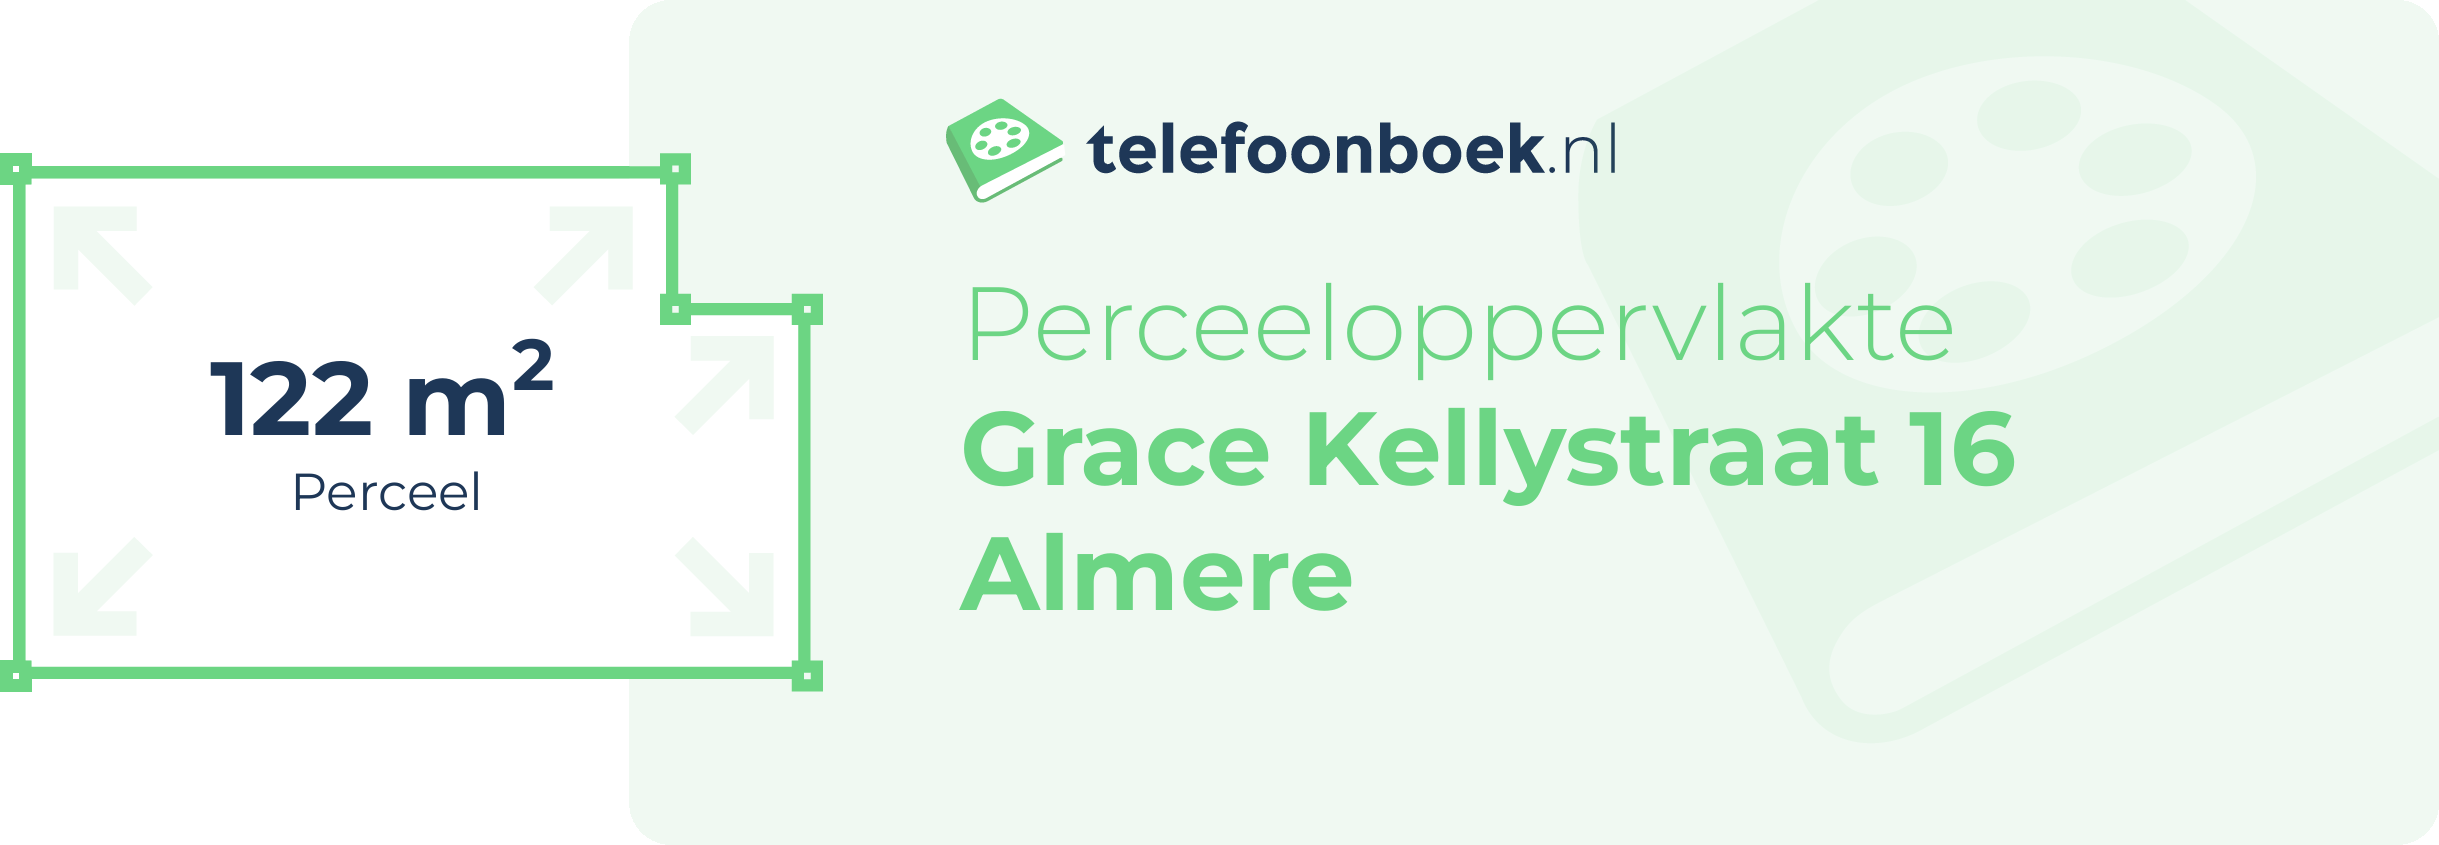 Perceeloppervlakte Grace Kellystraat 16 Almere